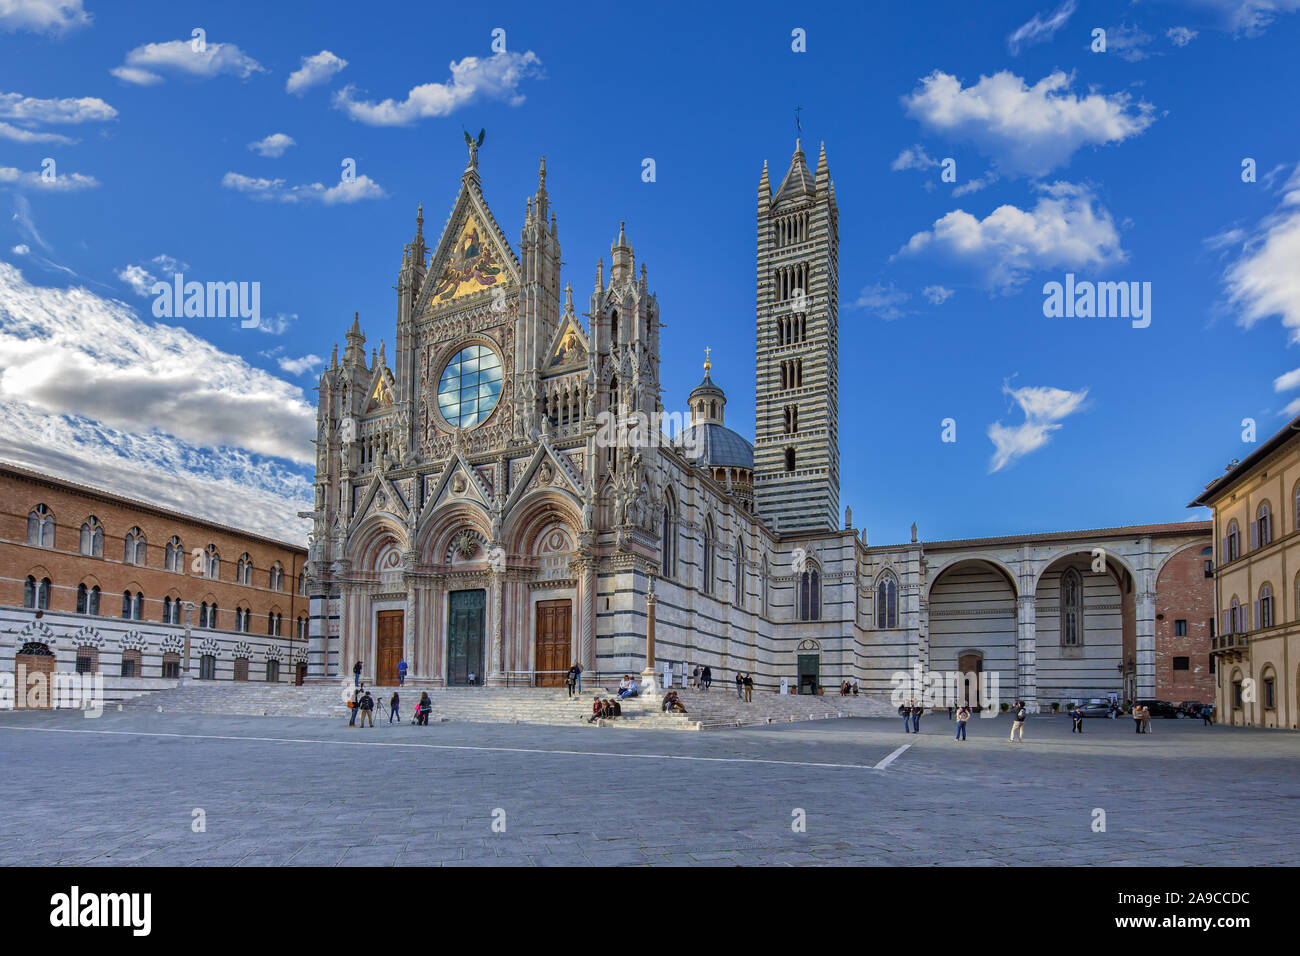 Los turistas visitan la catedral de Siena. Duomo di Siena es una catedral románico-gótica es una importante atracción turística en Siena, Toscana, Italia Foto de stock